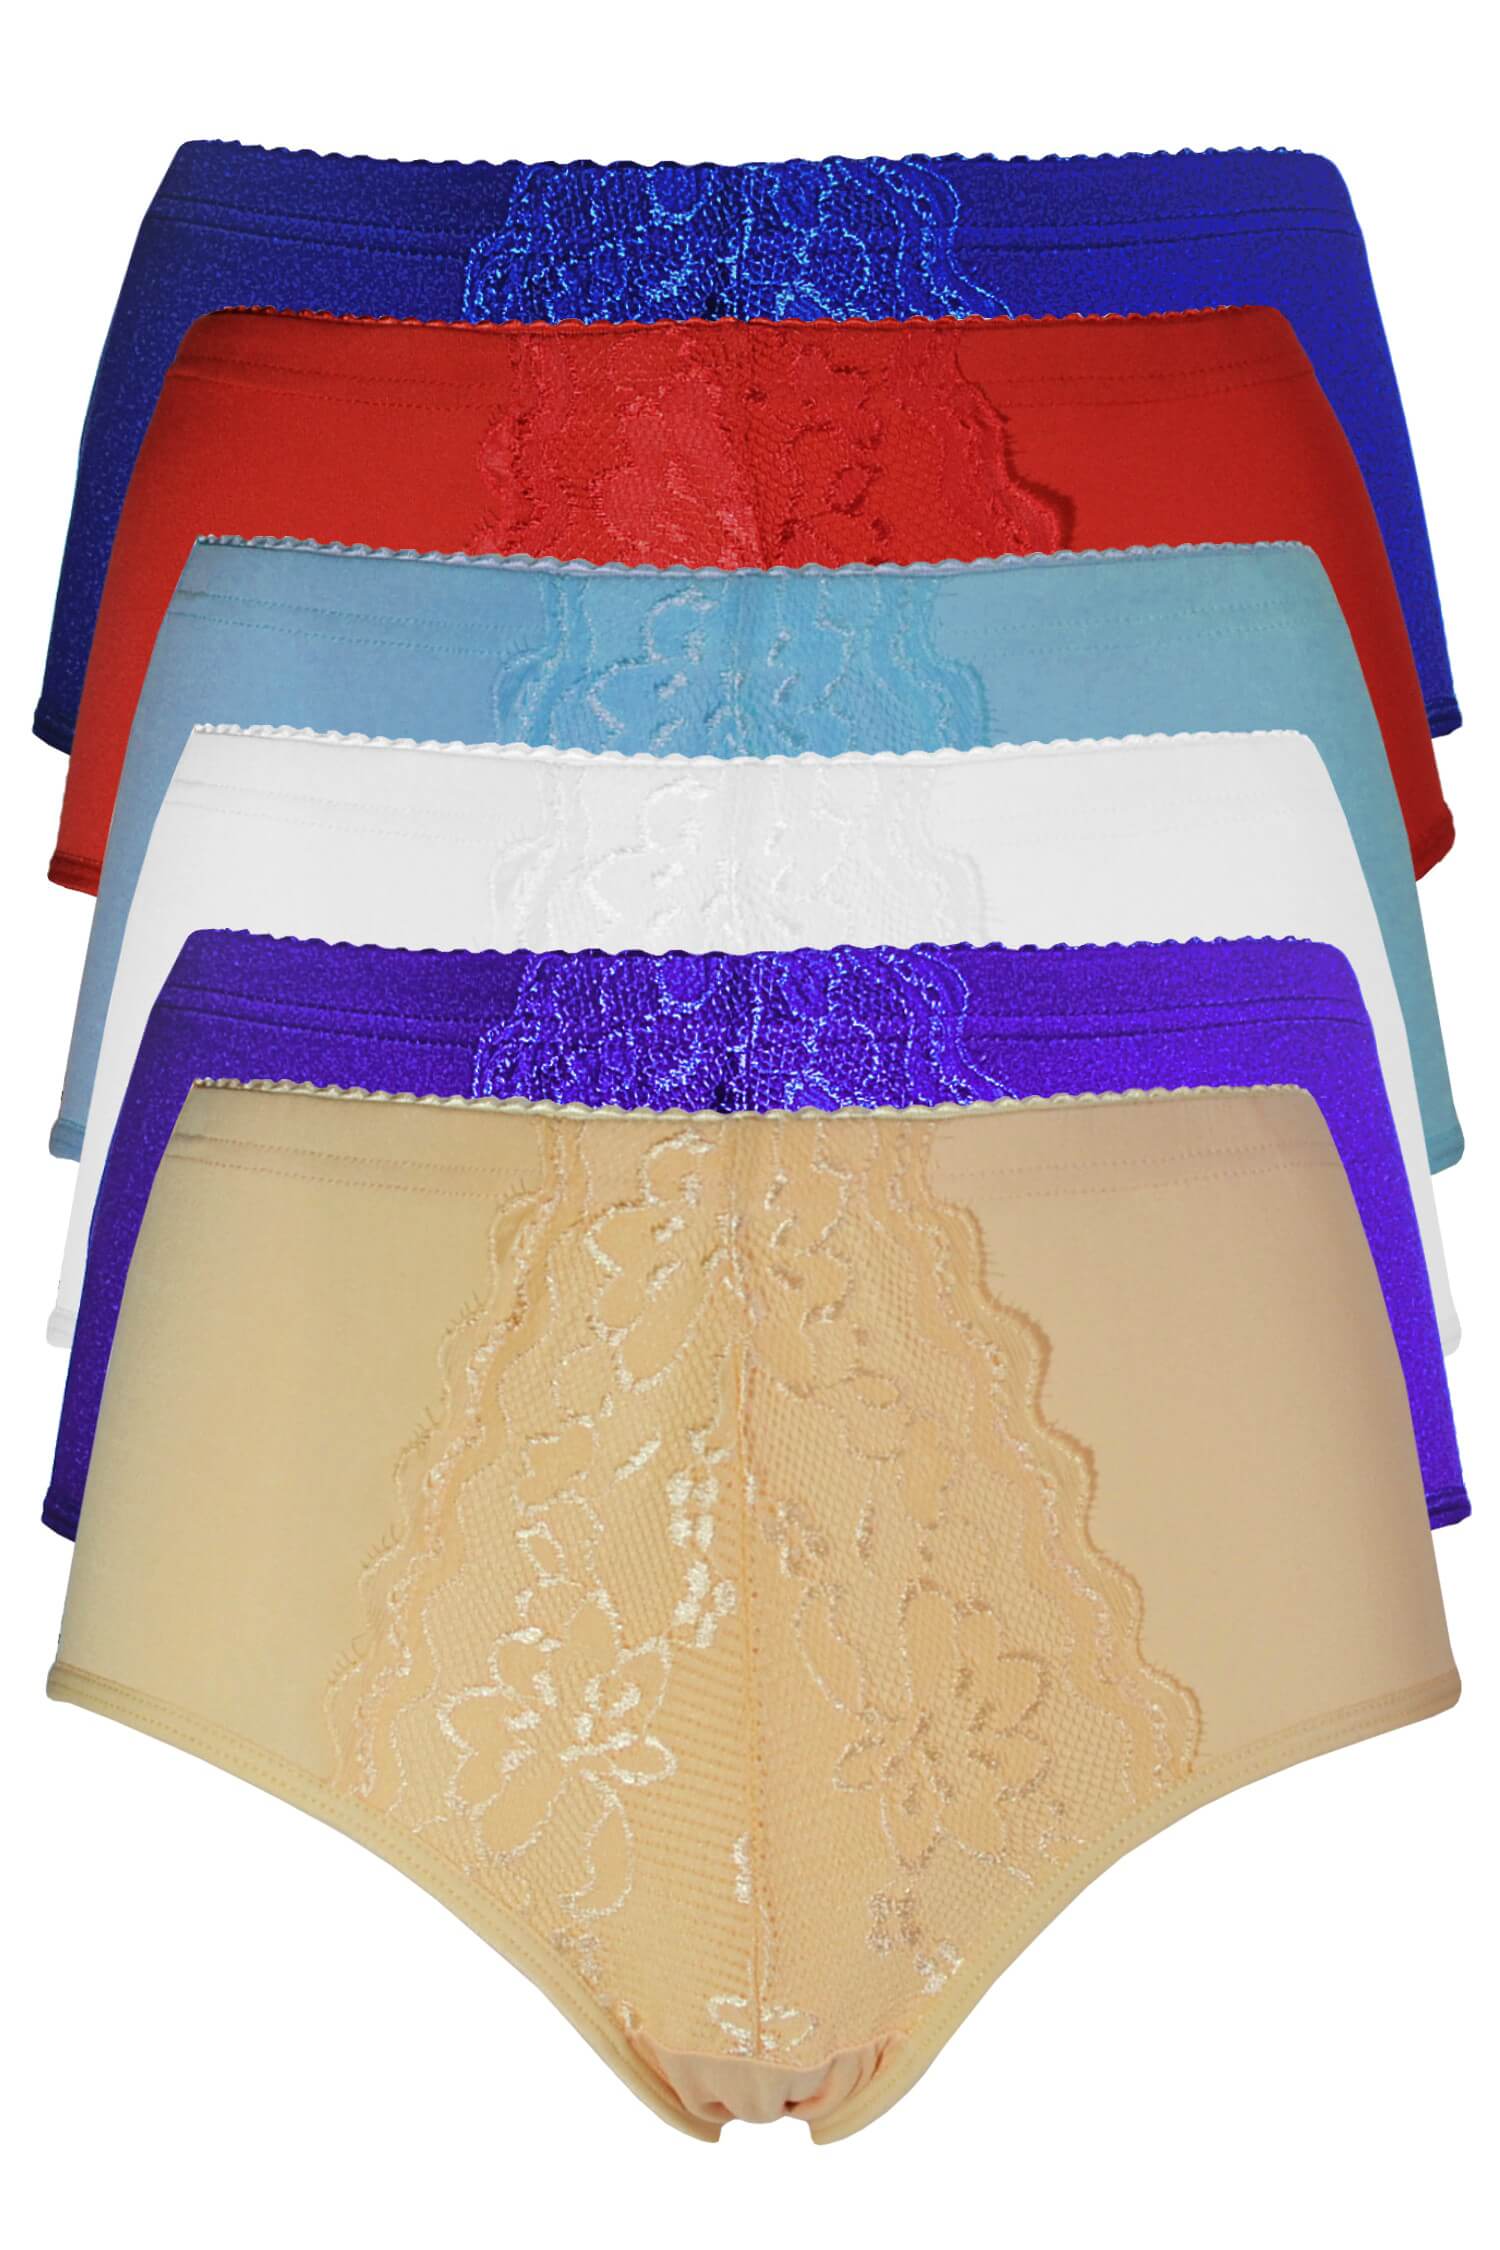 Jitka dámské bavlněné kalhotky s krajkou 9040 - 3 ks vícebarevná XL